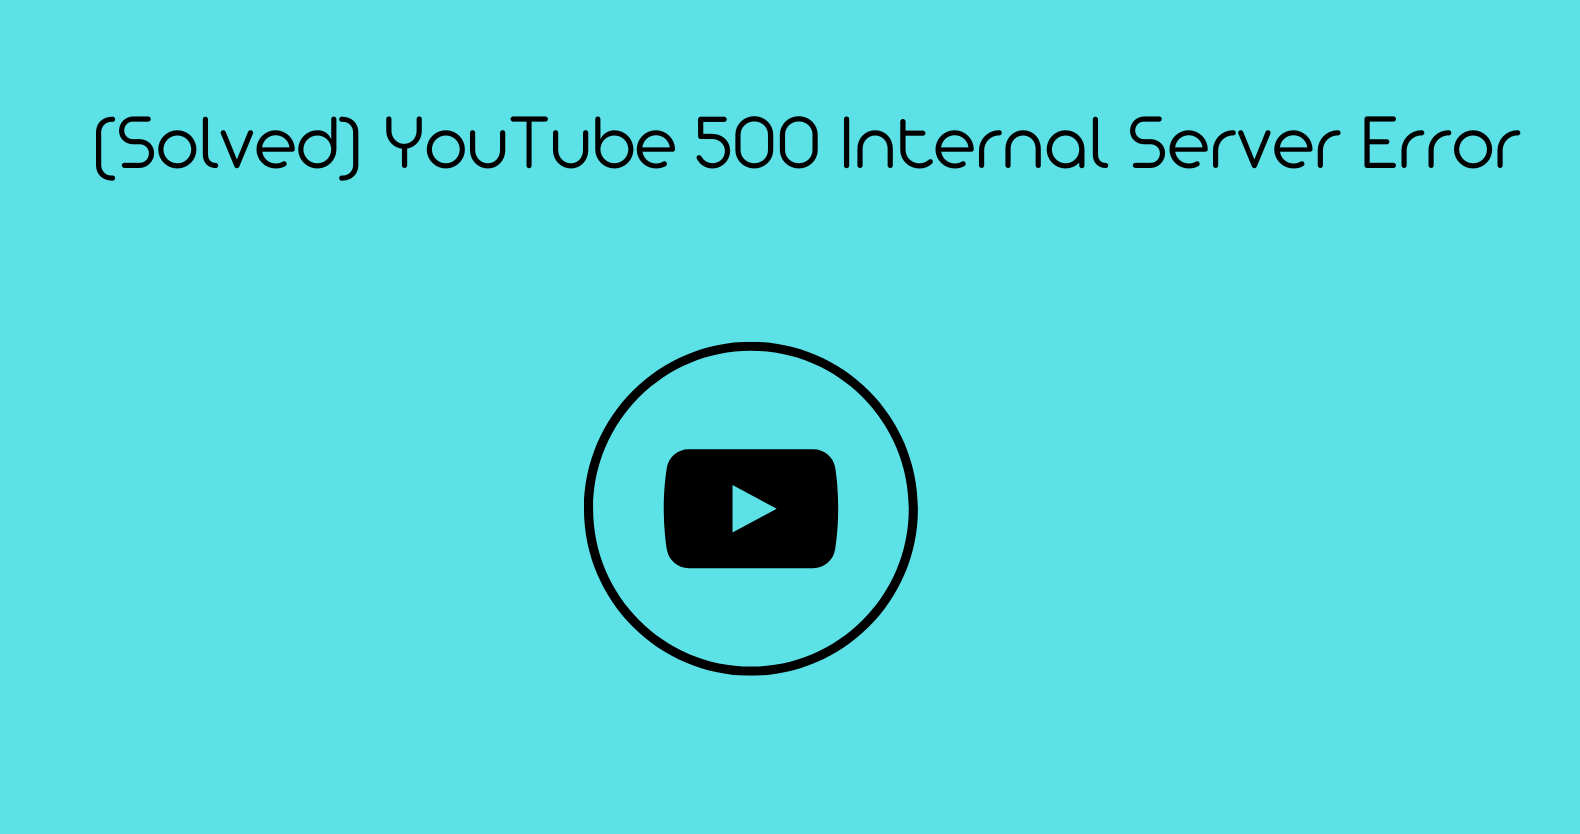 YouTube 500 Internal Server Error